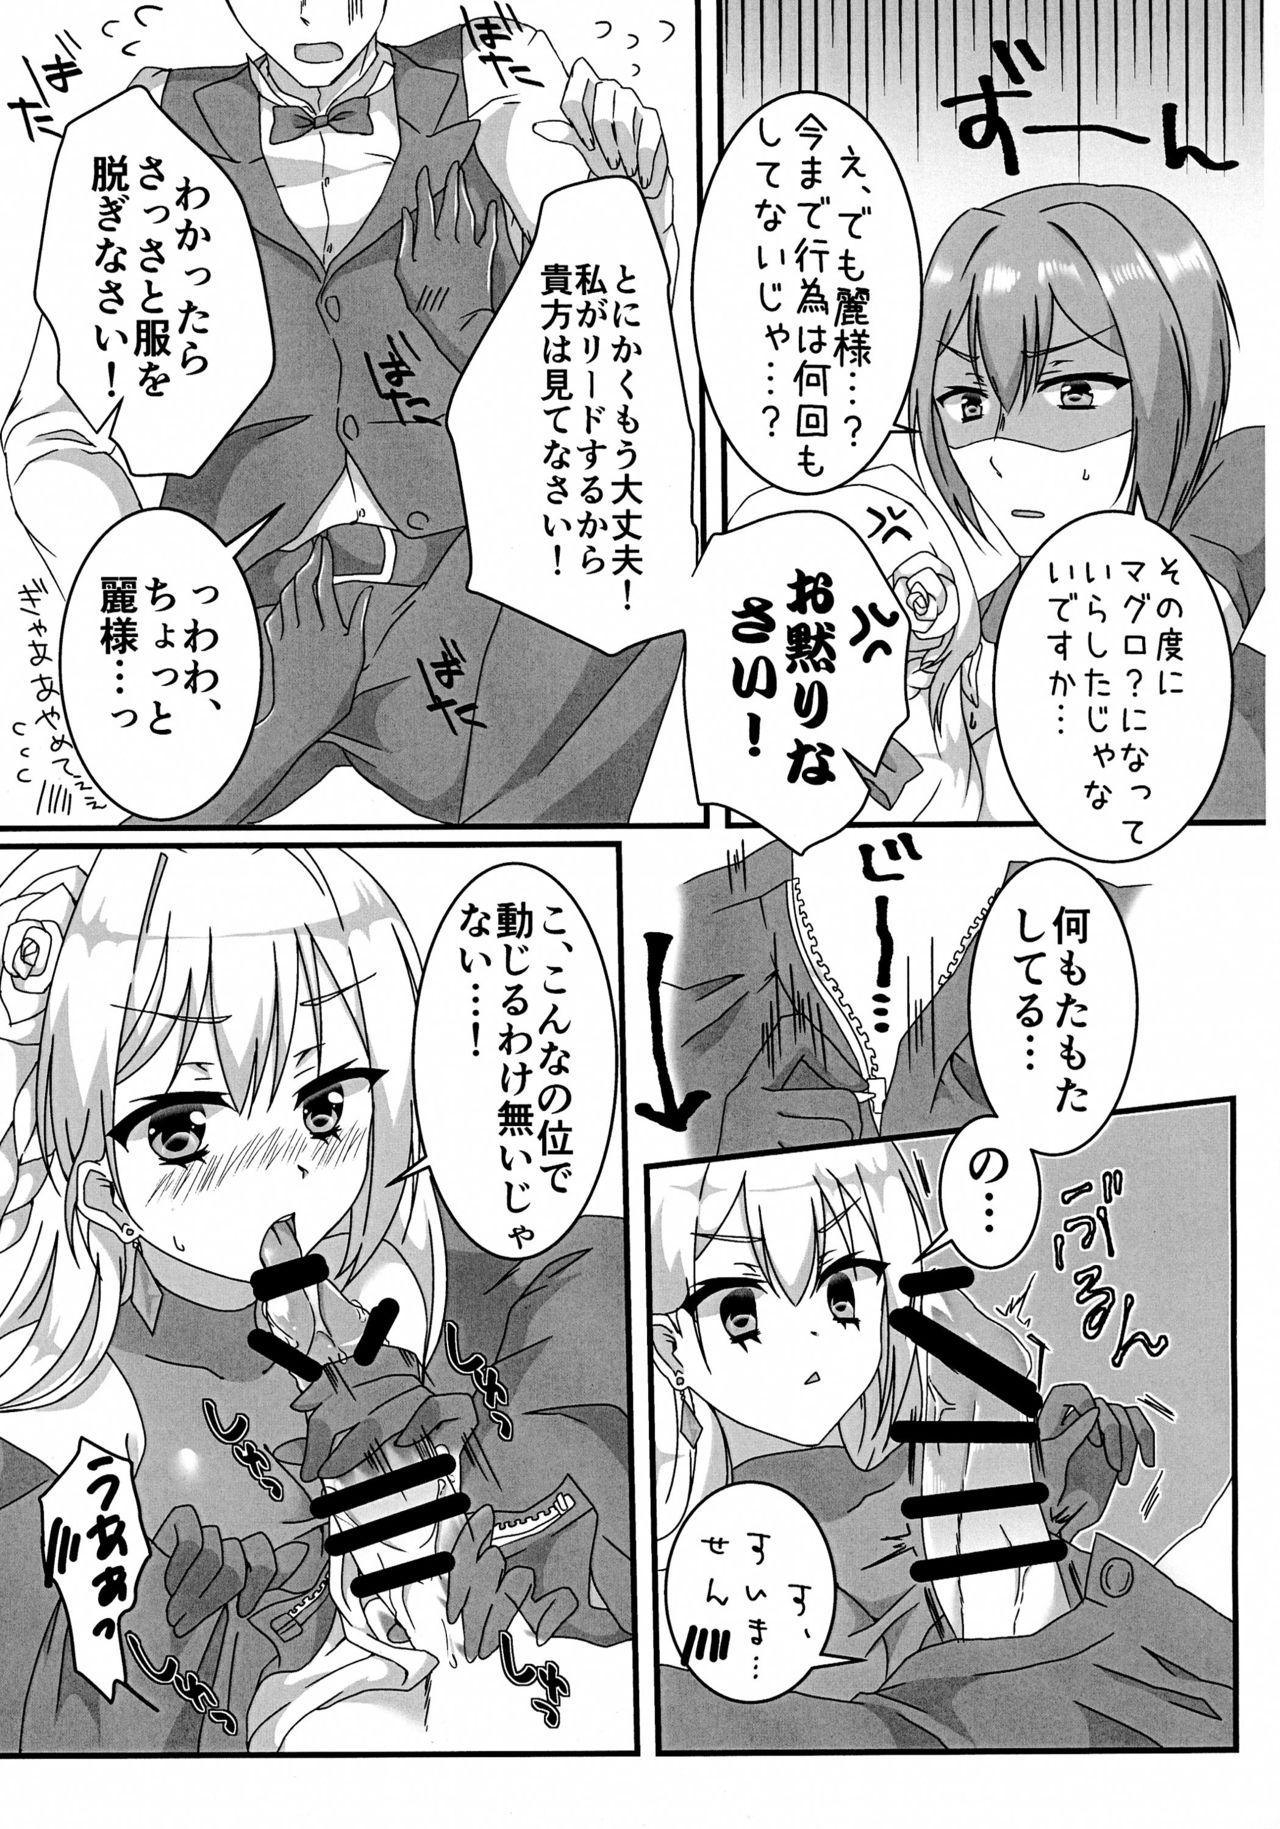 Brother Sister Ecchi na Ojou-sama wa suki desu ka? - Hidan no aria Cousin - Page 7